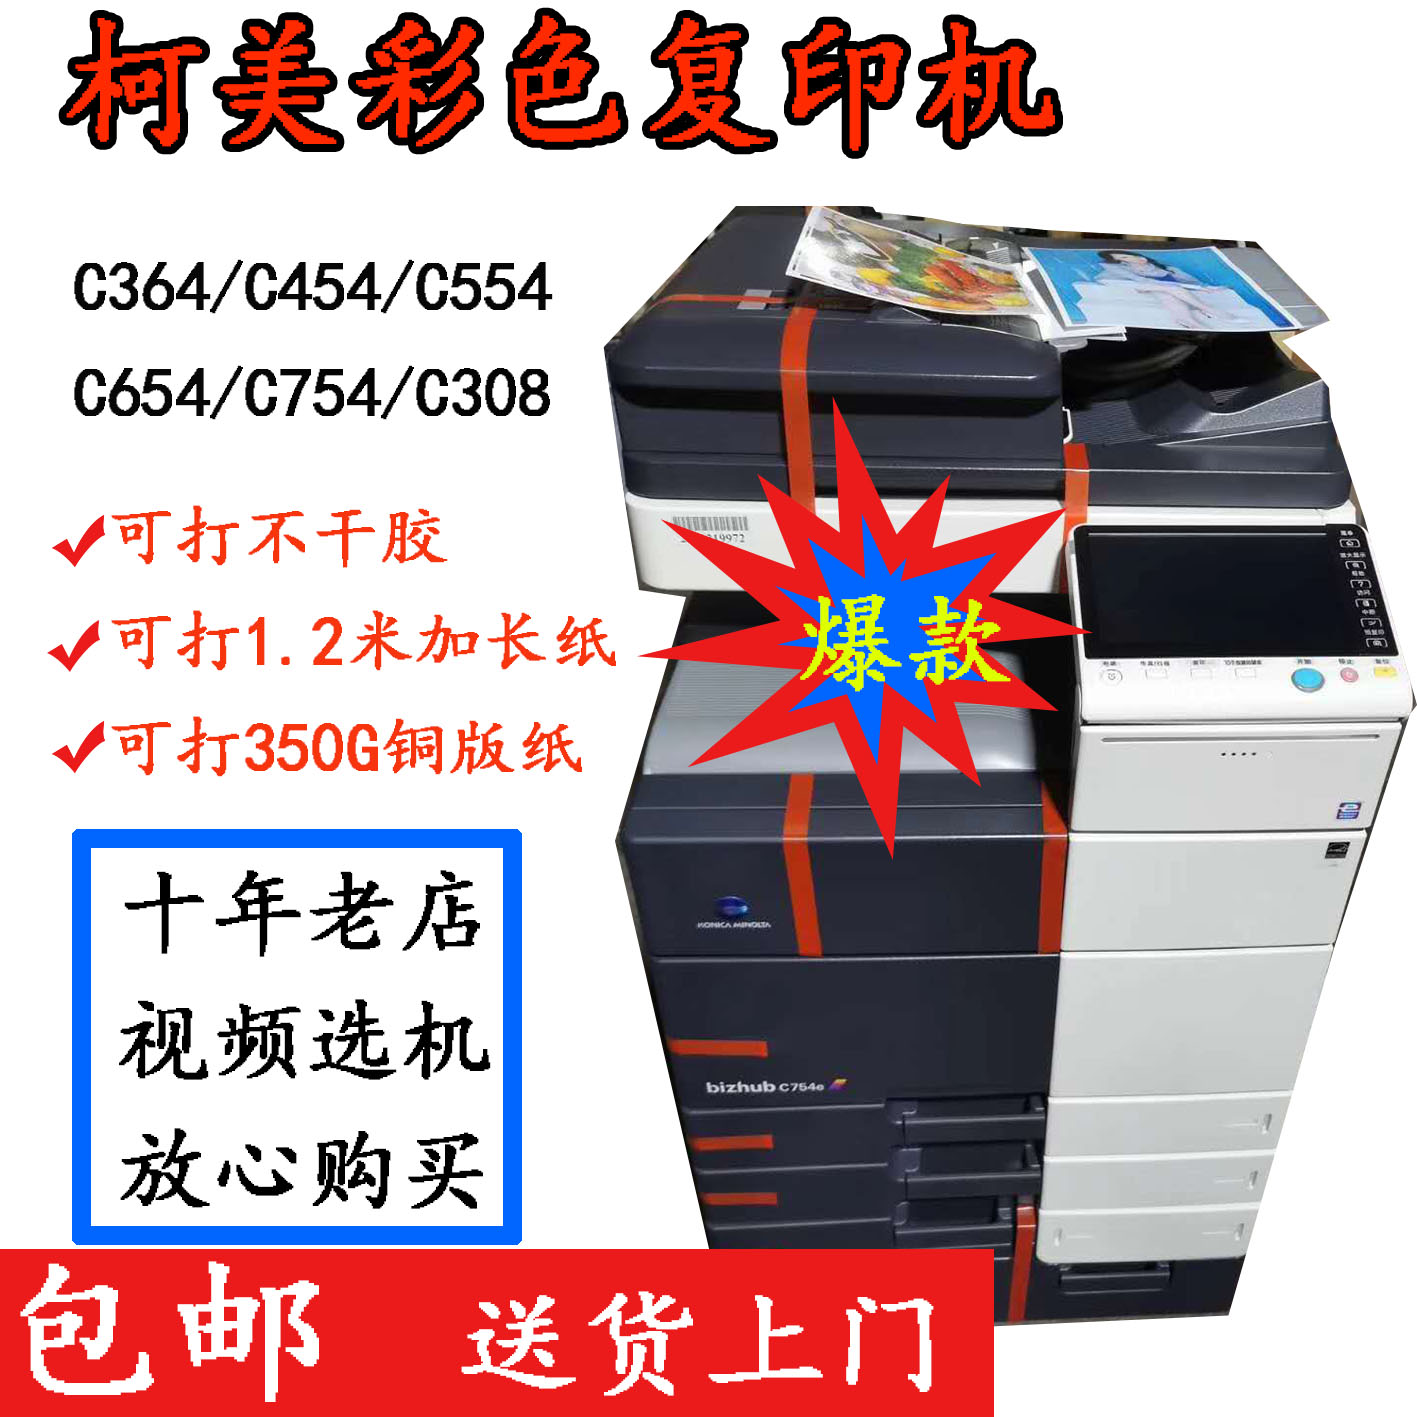 柯美C364E C454 C554 754E C308彩色复印机A3+一体激光双面打印机